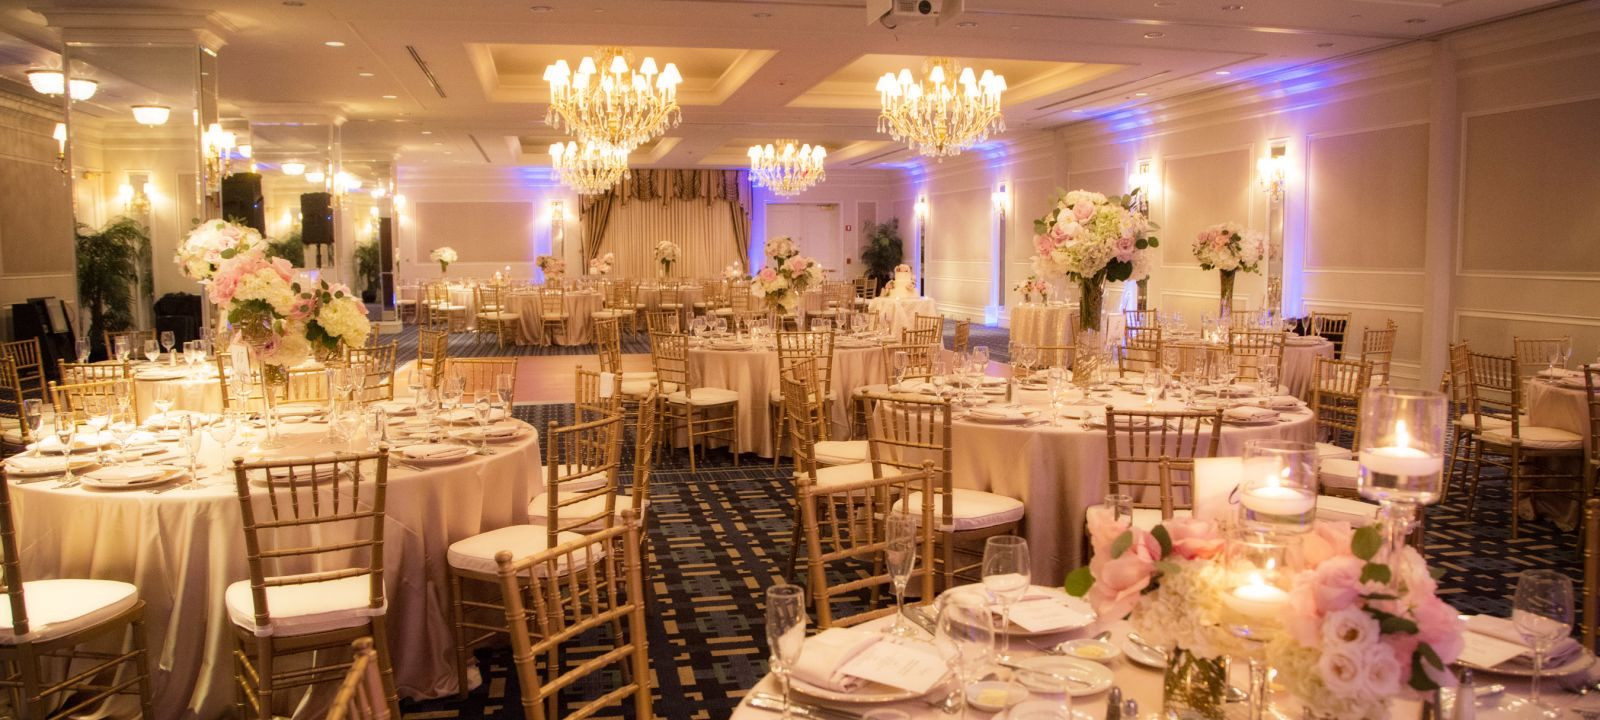 Wedding Venues In Boston
 Wedding Venues in Boston